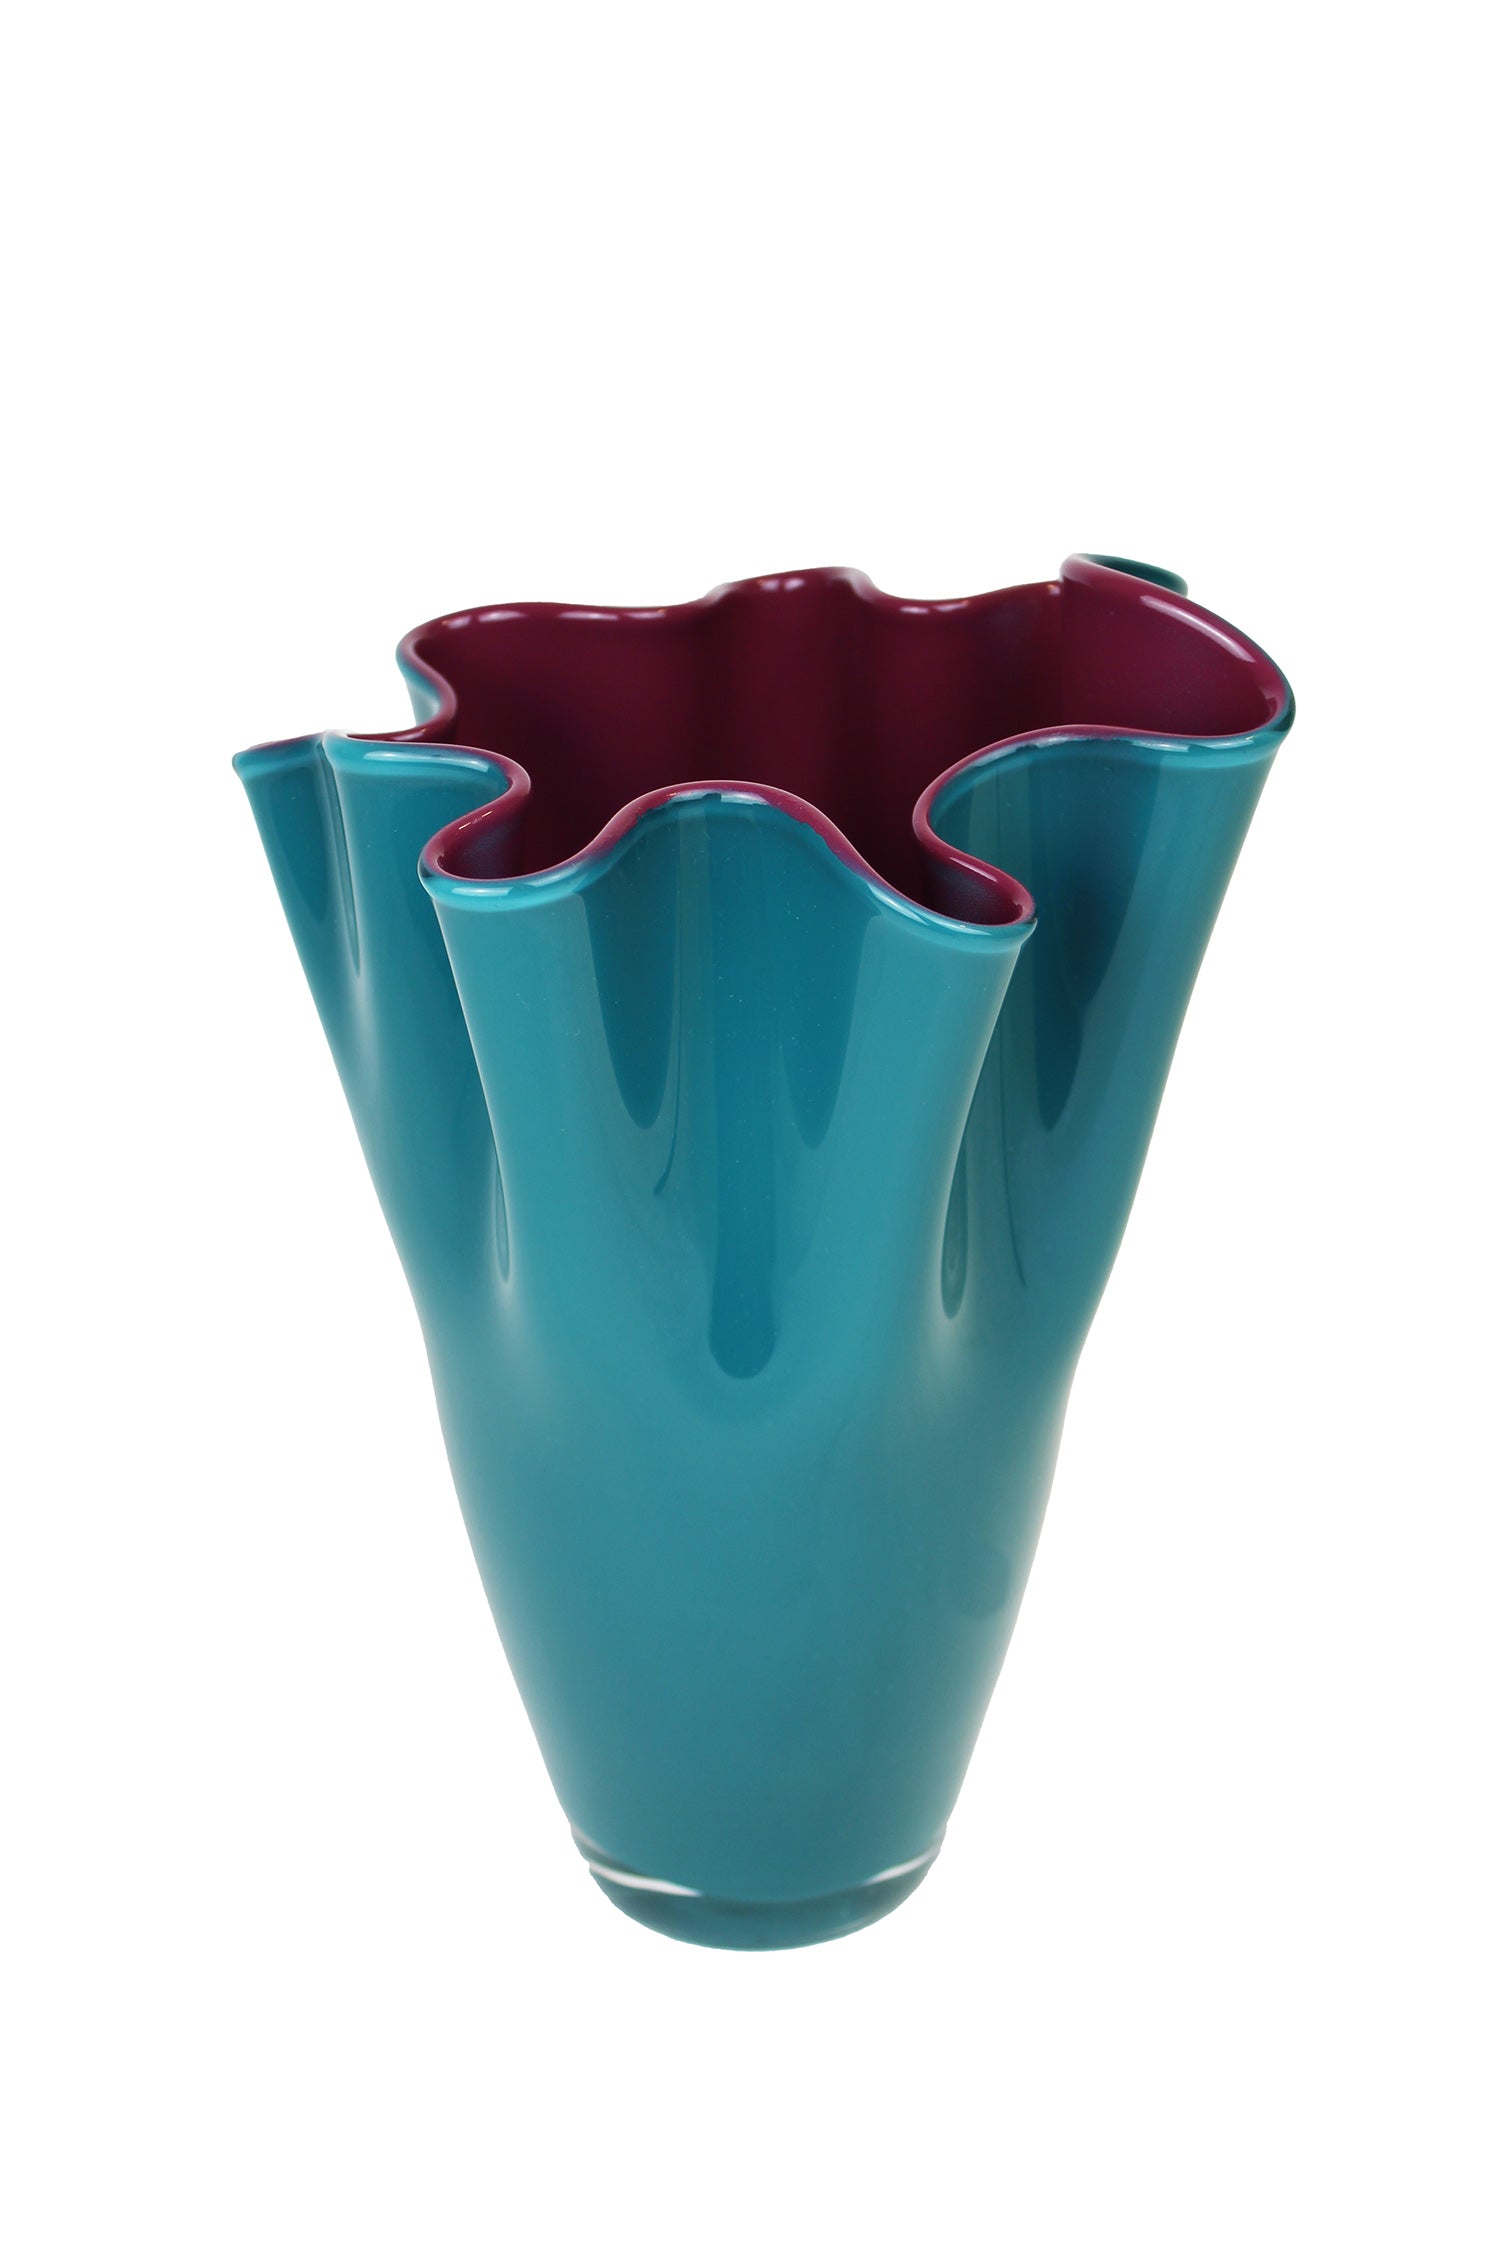 Vase aus türkisem Glas in 2 Farben